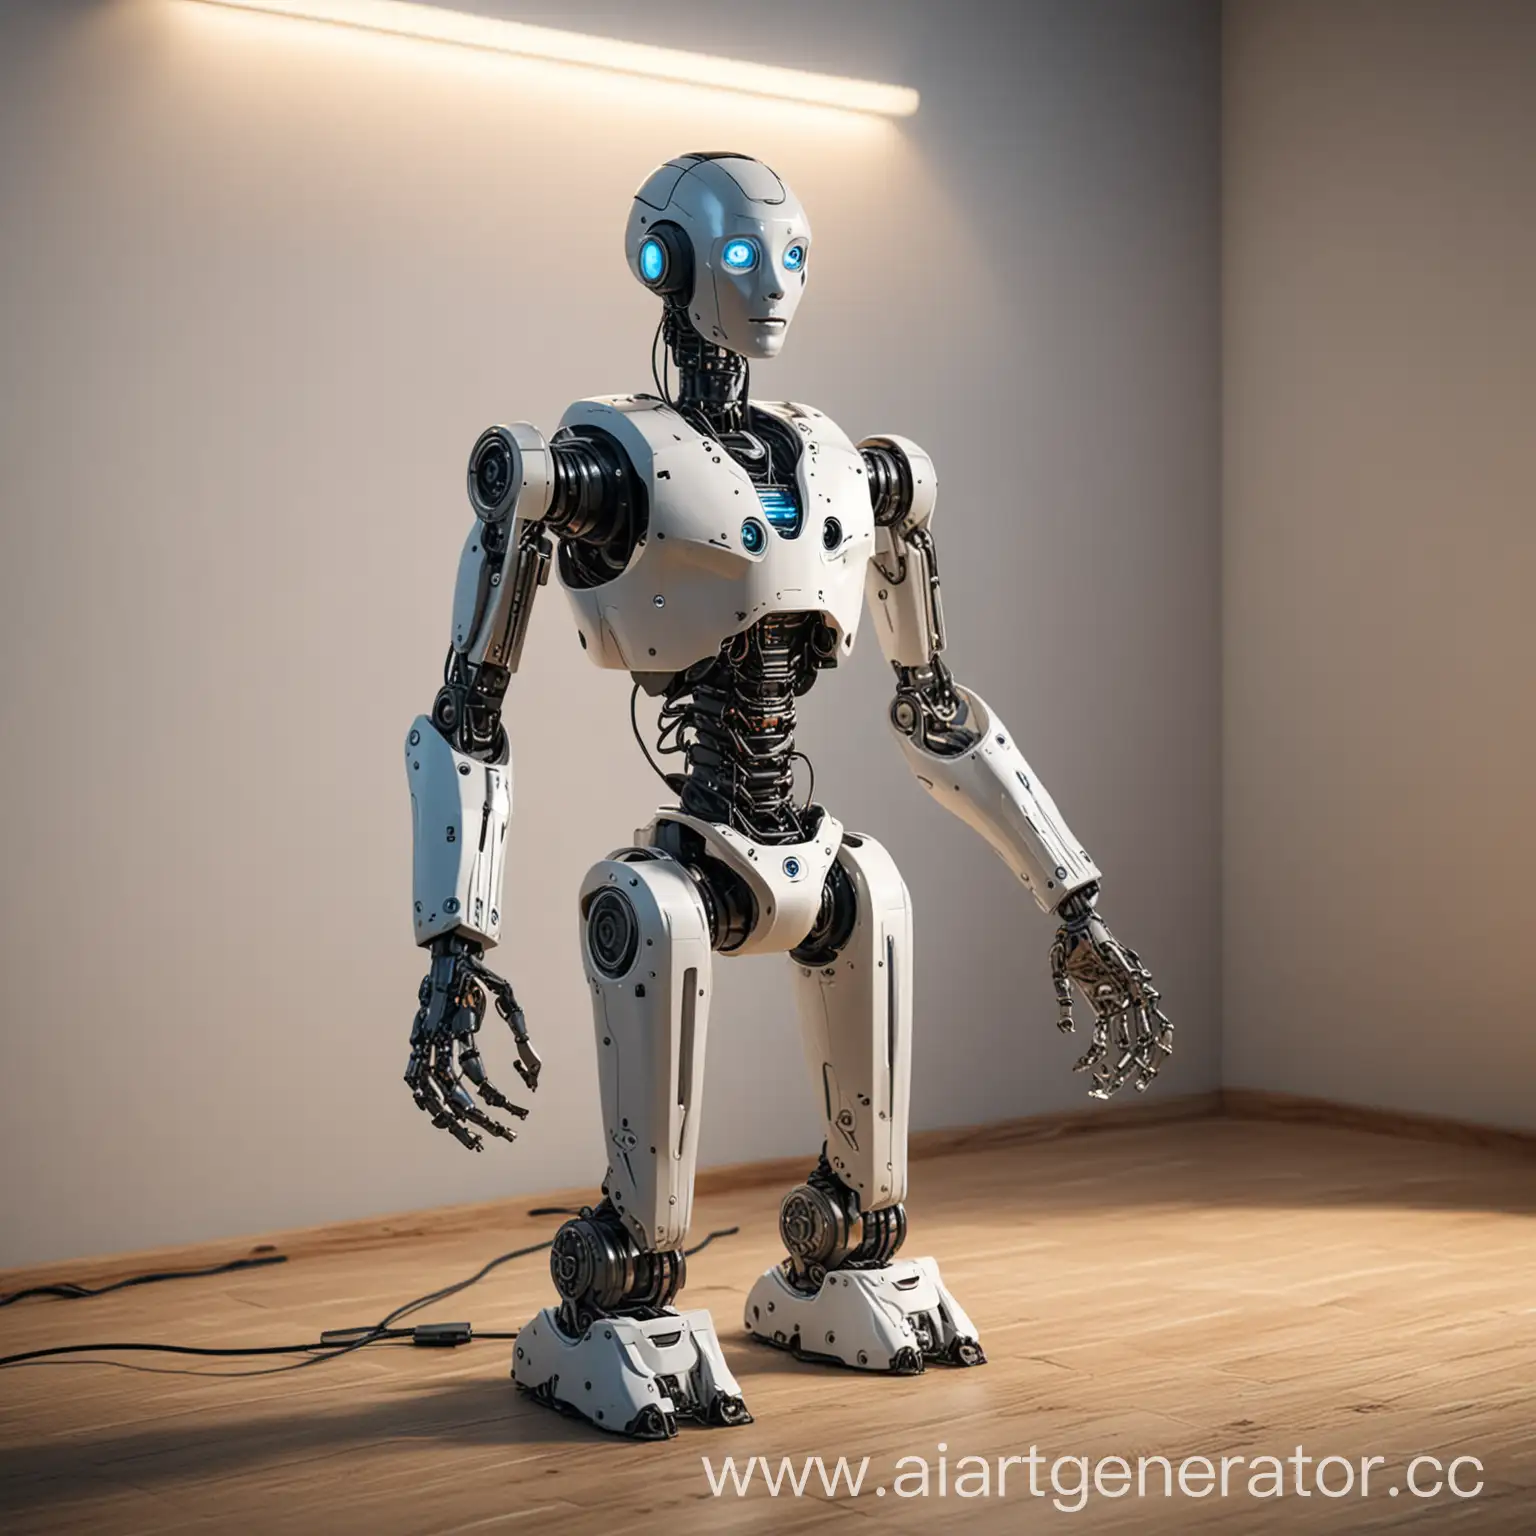 домашний робот помощник из будущего, при комнатном освещении, у которого несколько рук-манипуляторов со сменными насадками